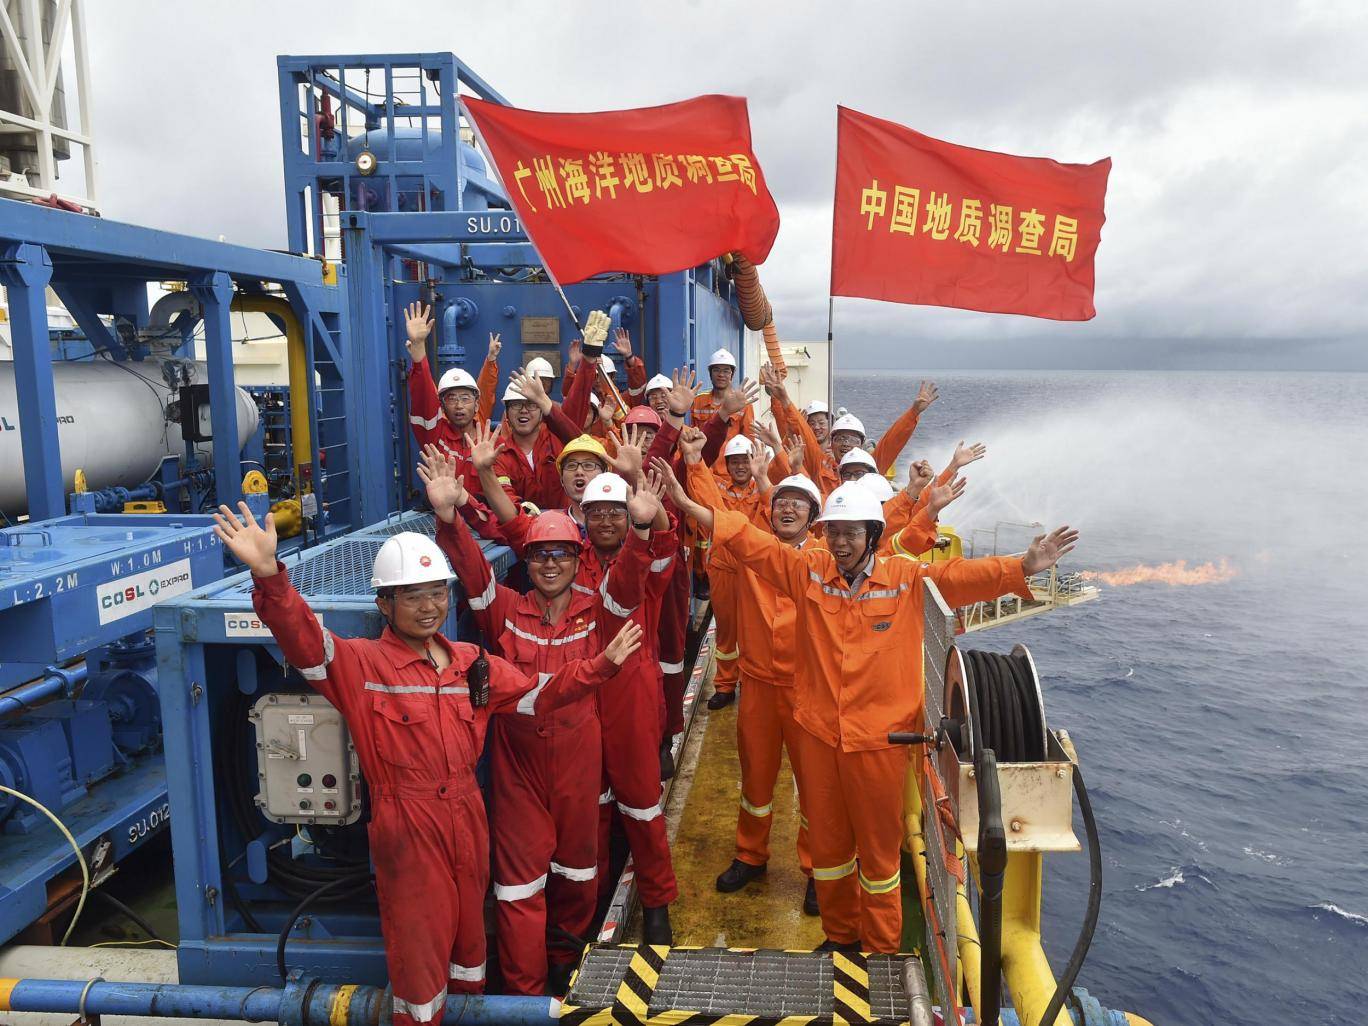 اليابان والصين تستخرج “جليد قابل للاحتراق” من البحر قد يستبدل البترول